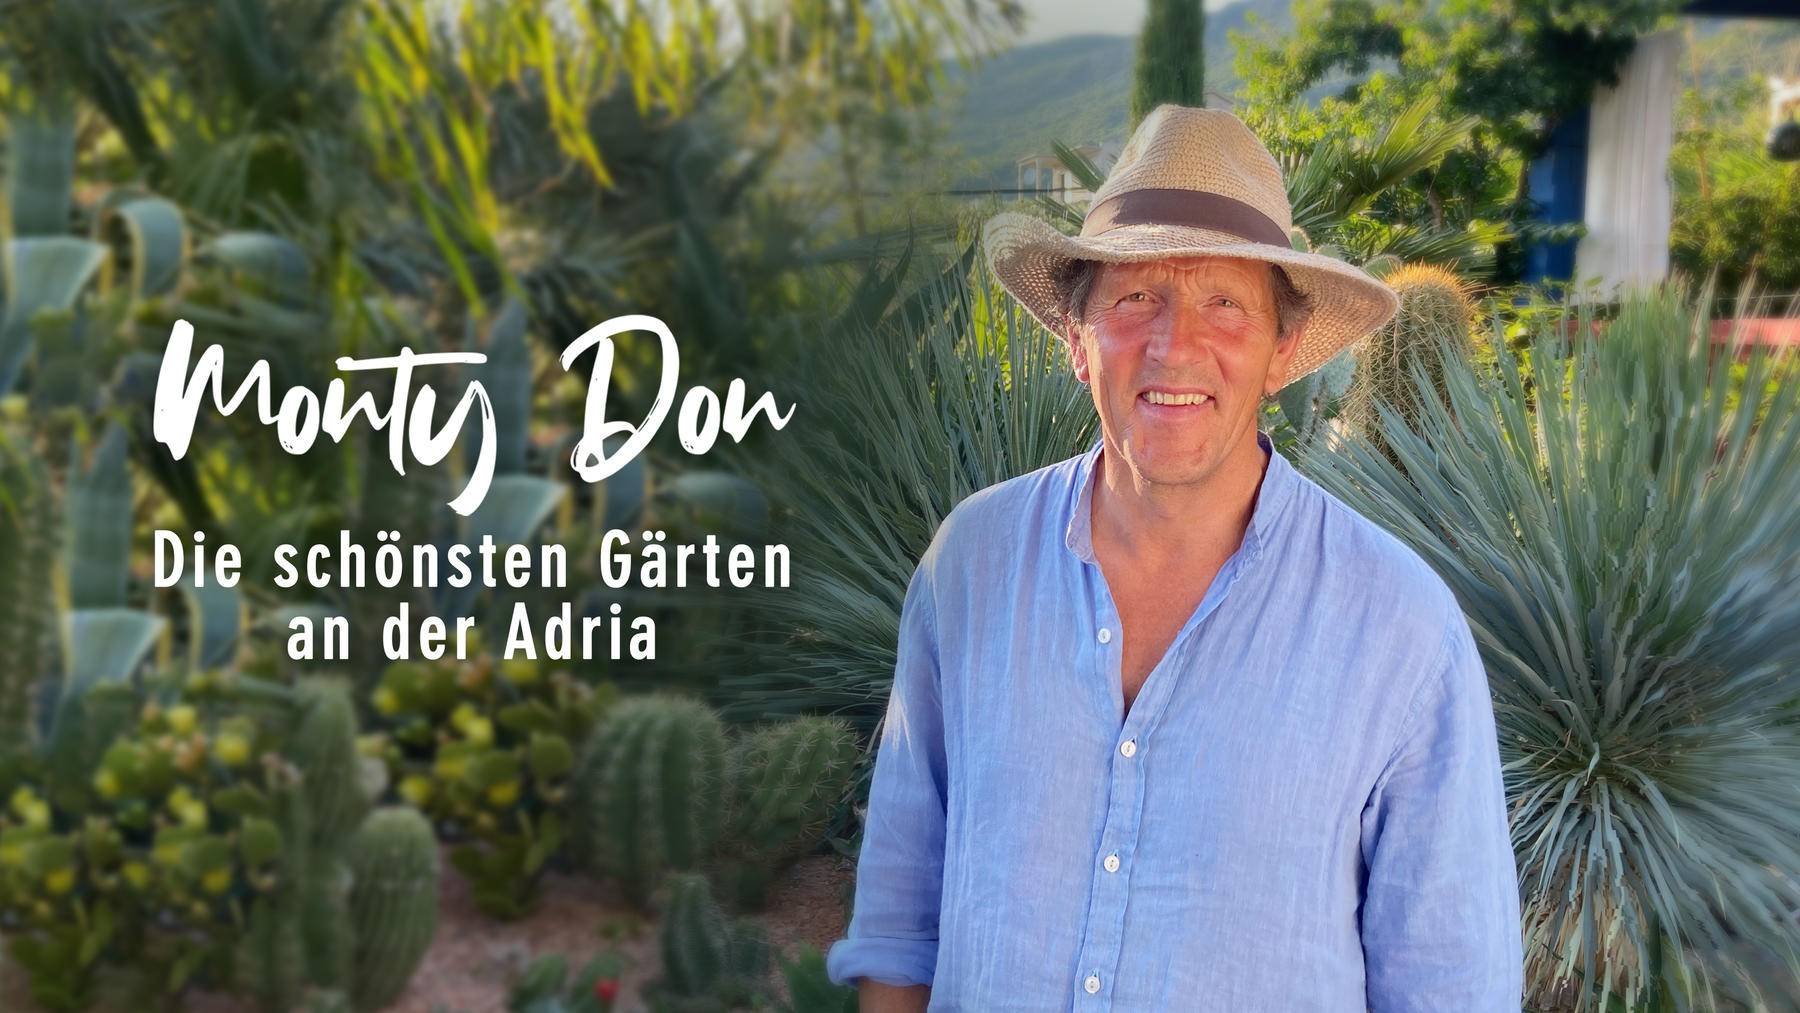 Monty Don: Die schönsten Gärten an der Adria